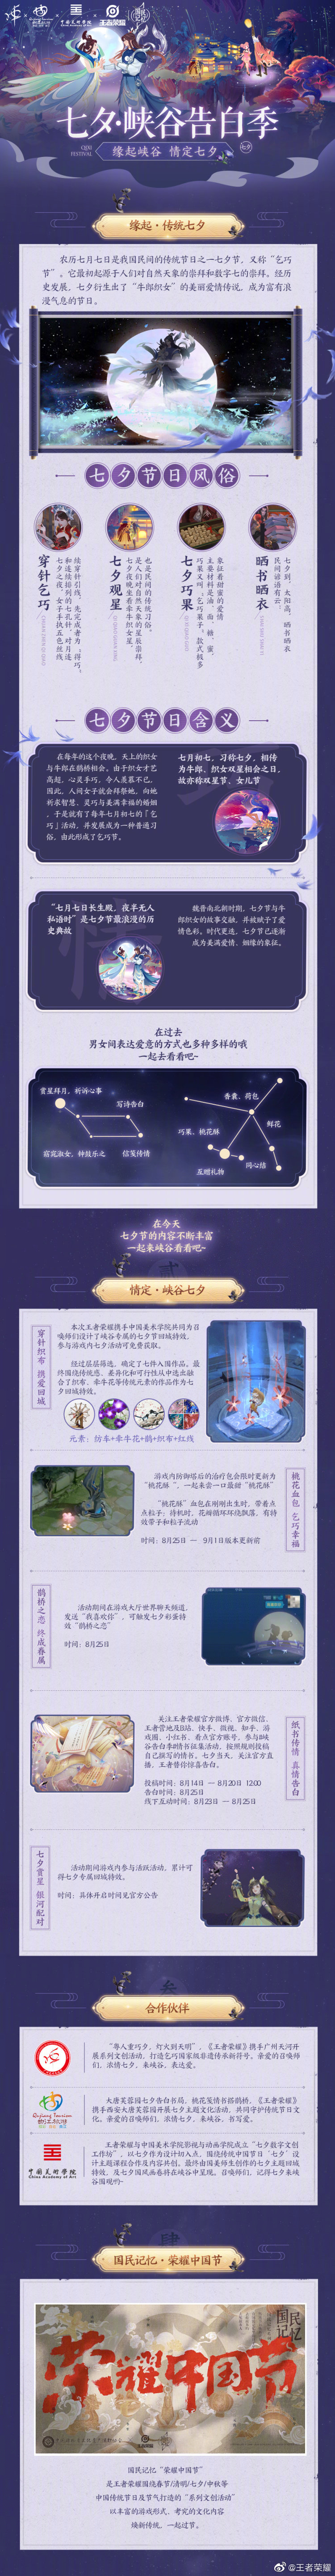 七夕节游戏内外活动攻略来袭 1V1镜像对决模式今日开启